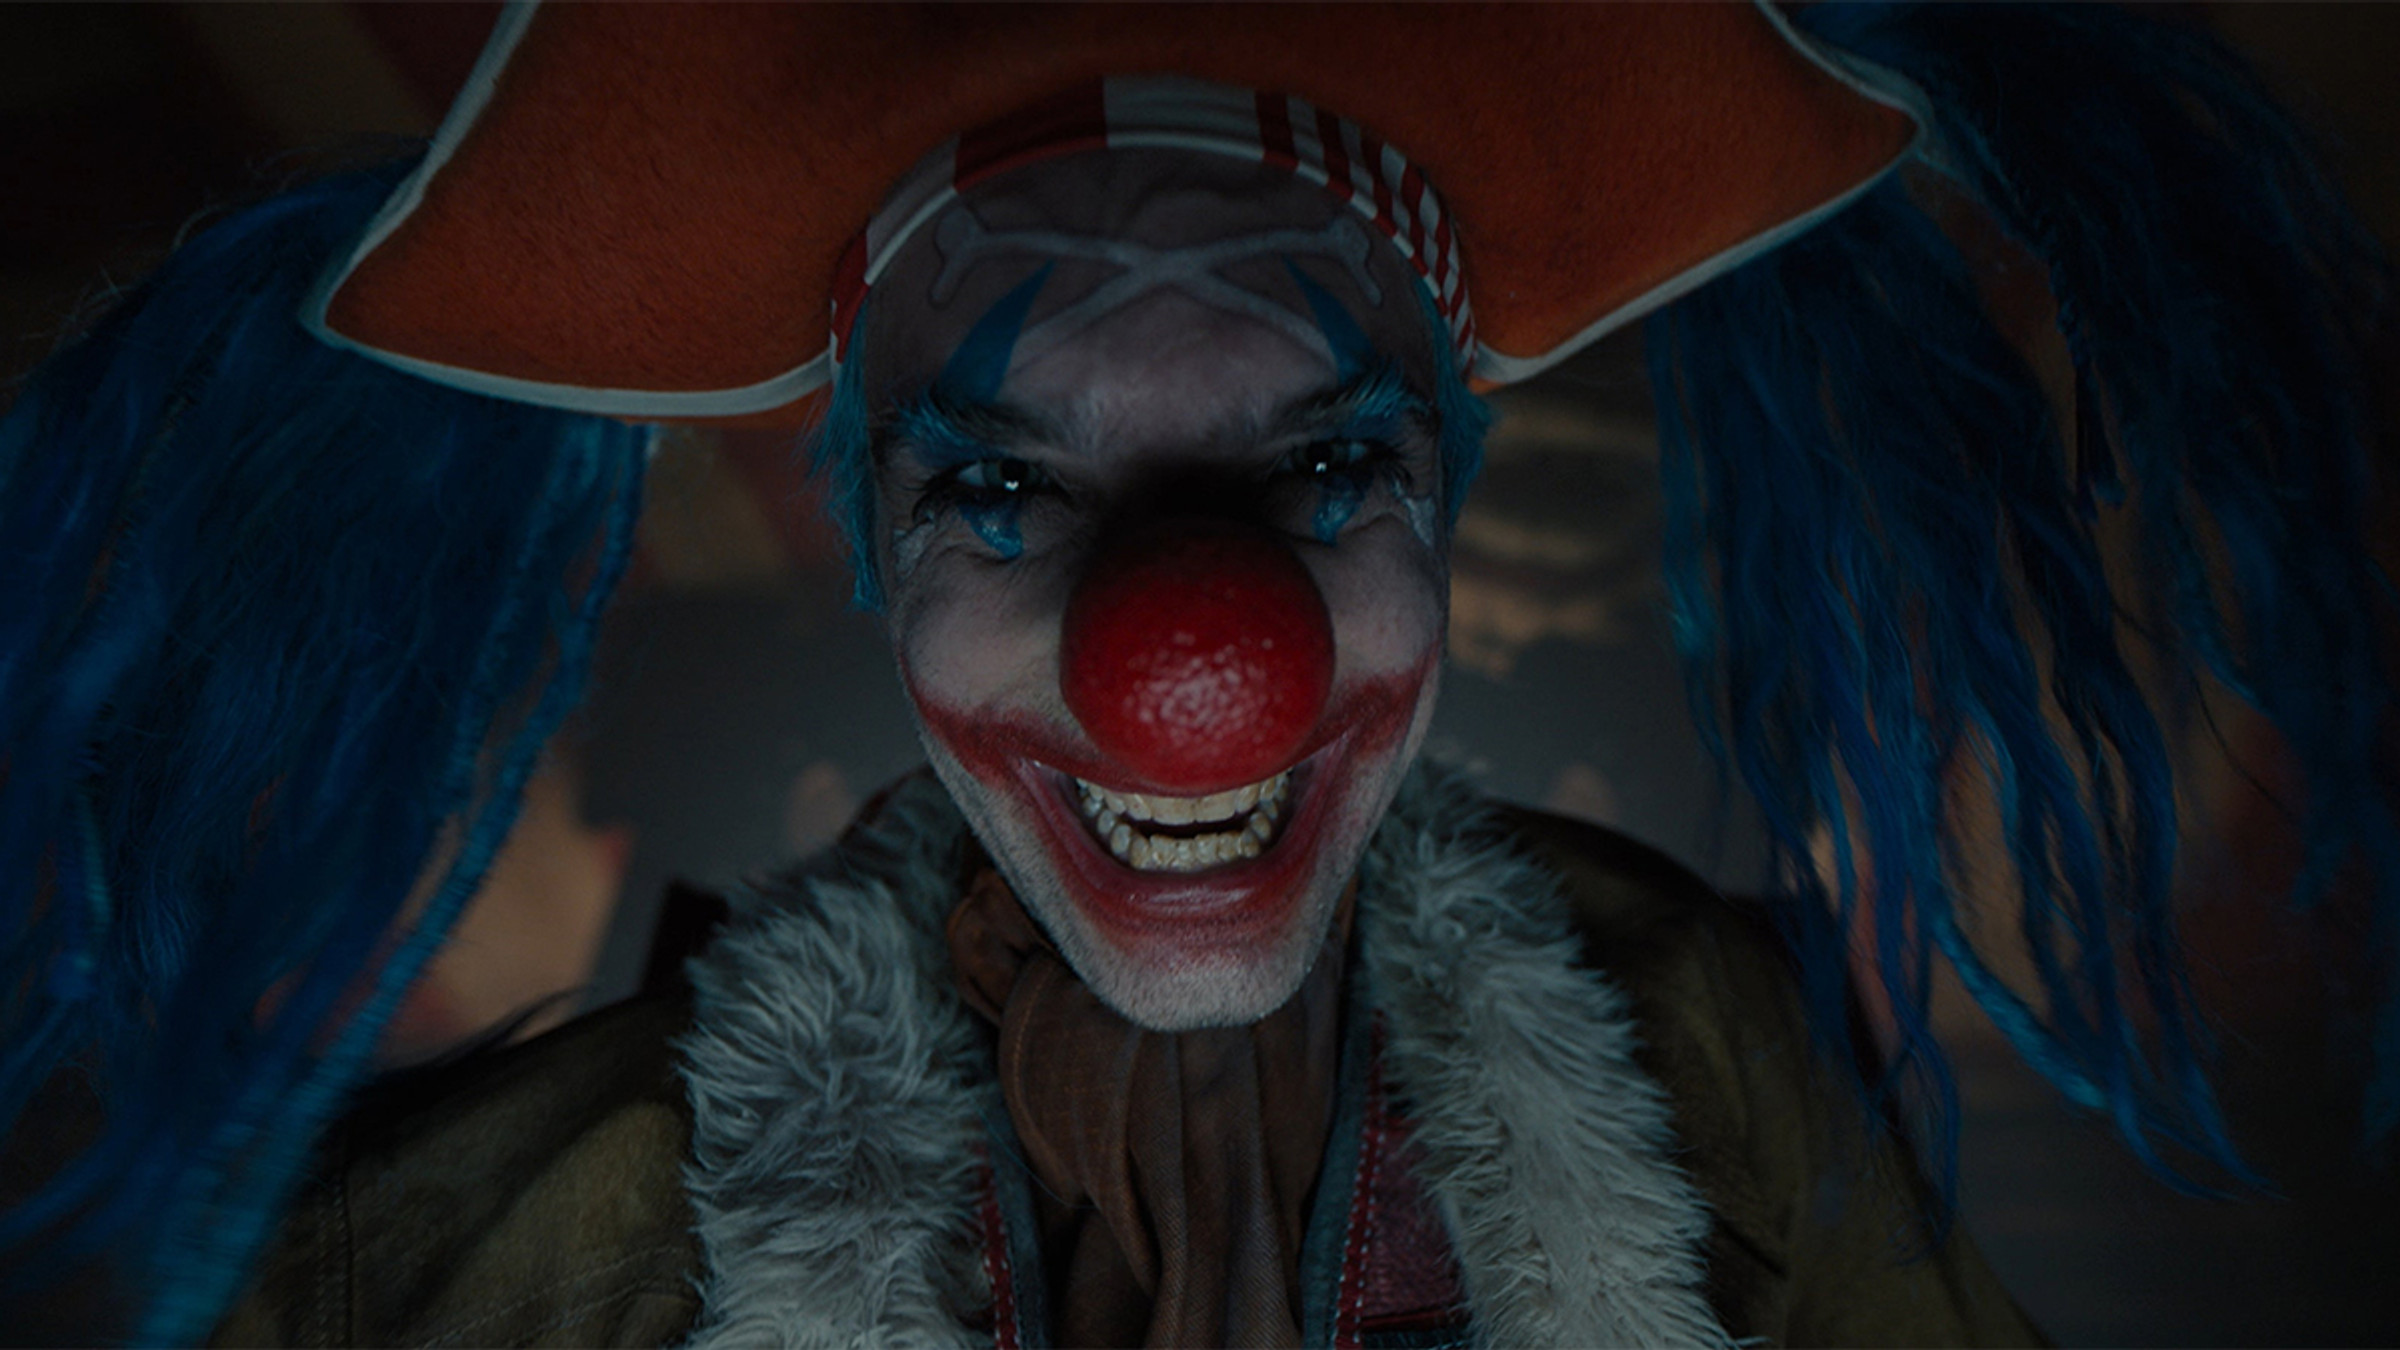 baggy-clown-captain-one-piece-live-action-personnage-qui-acteur-histoire-lore-difference-serie-netflix